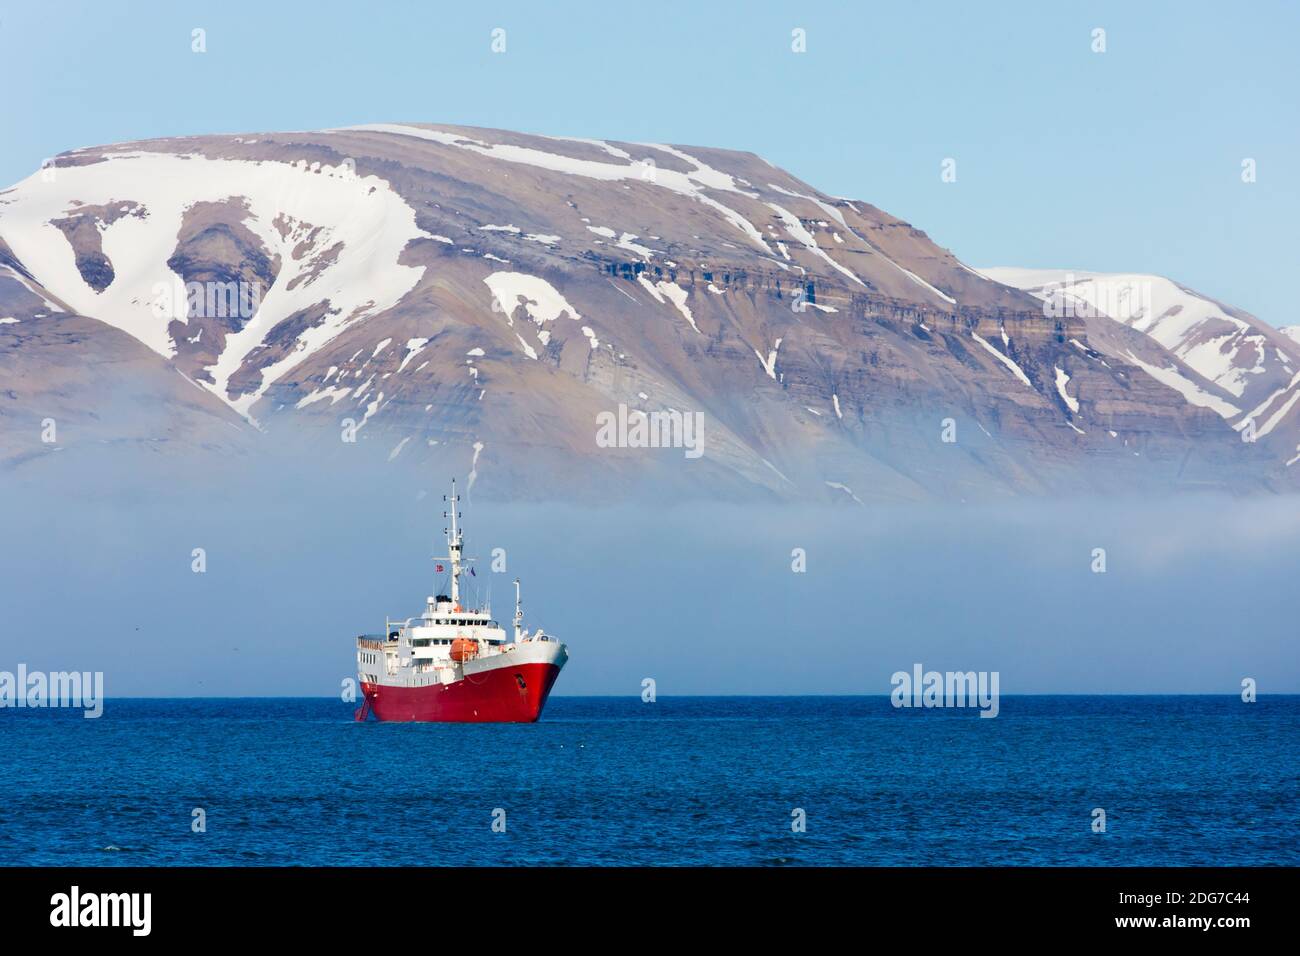 Bateau de croisière sur l'océan Arctique, Diabasodden, Spitsbergen, Norvège Banque D'Images